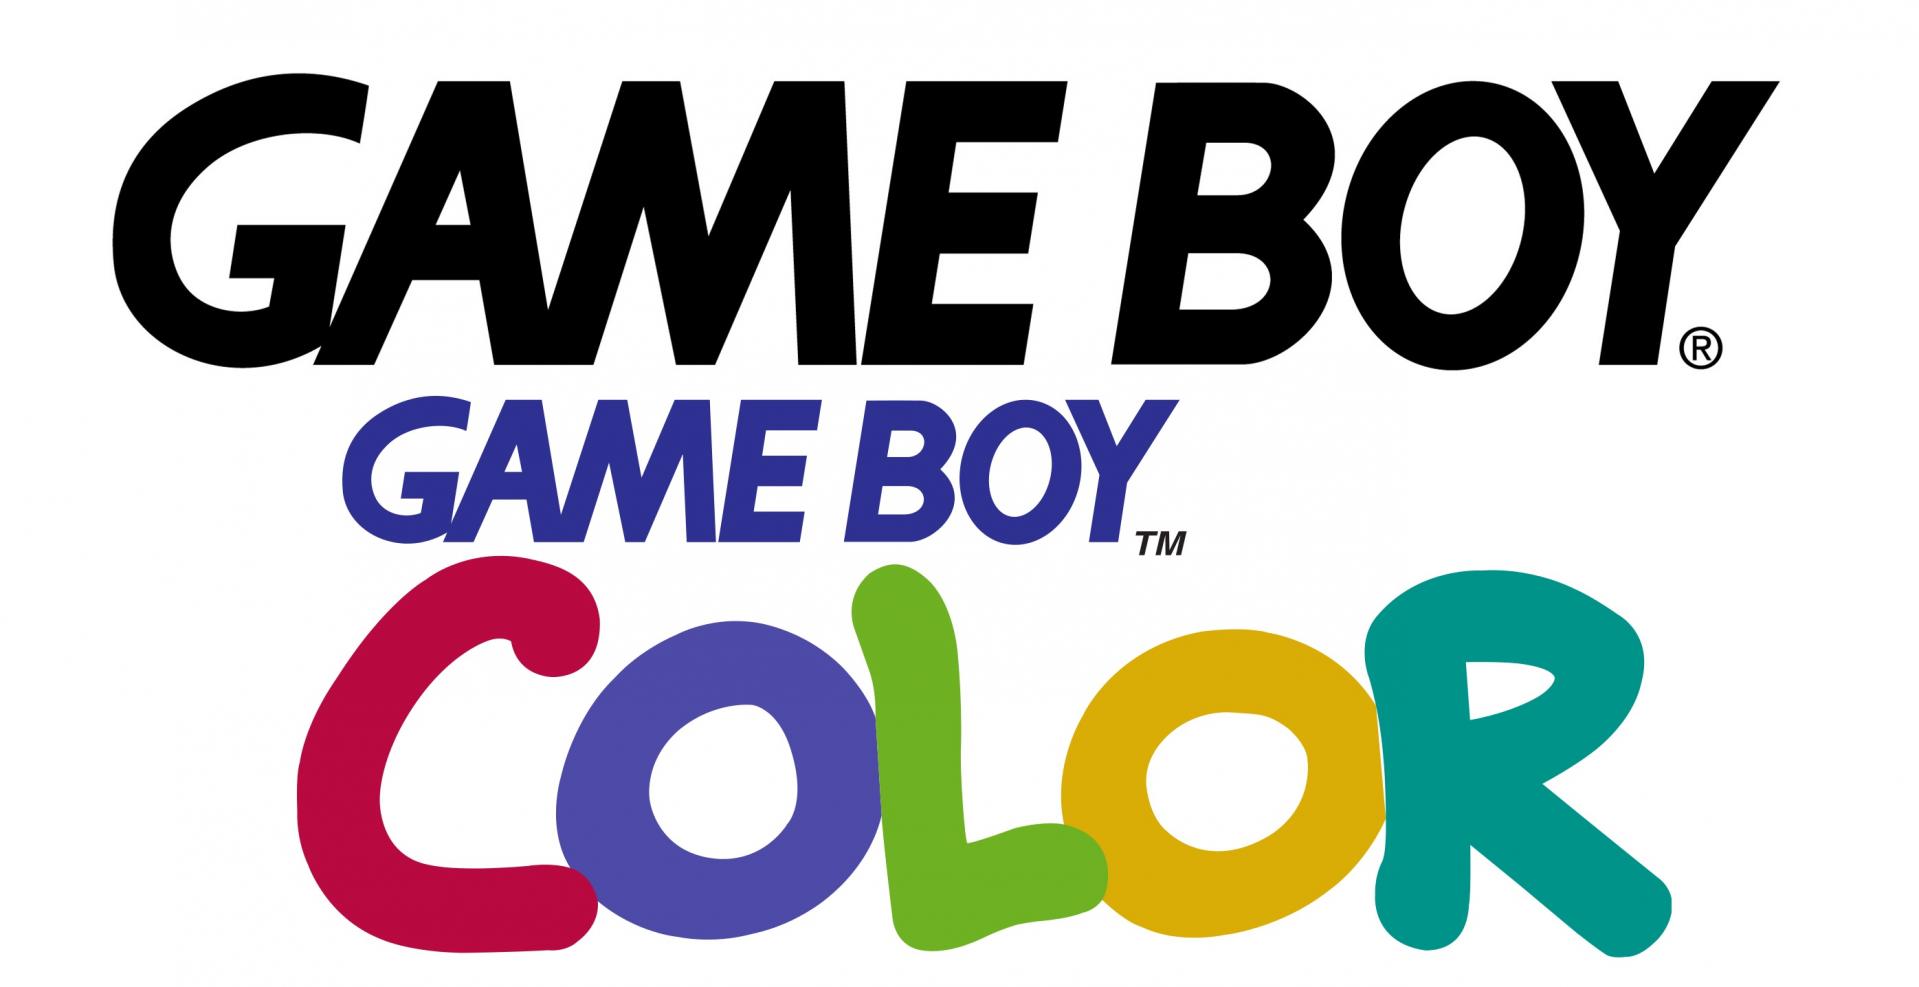 Game boy logo